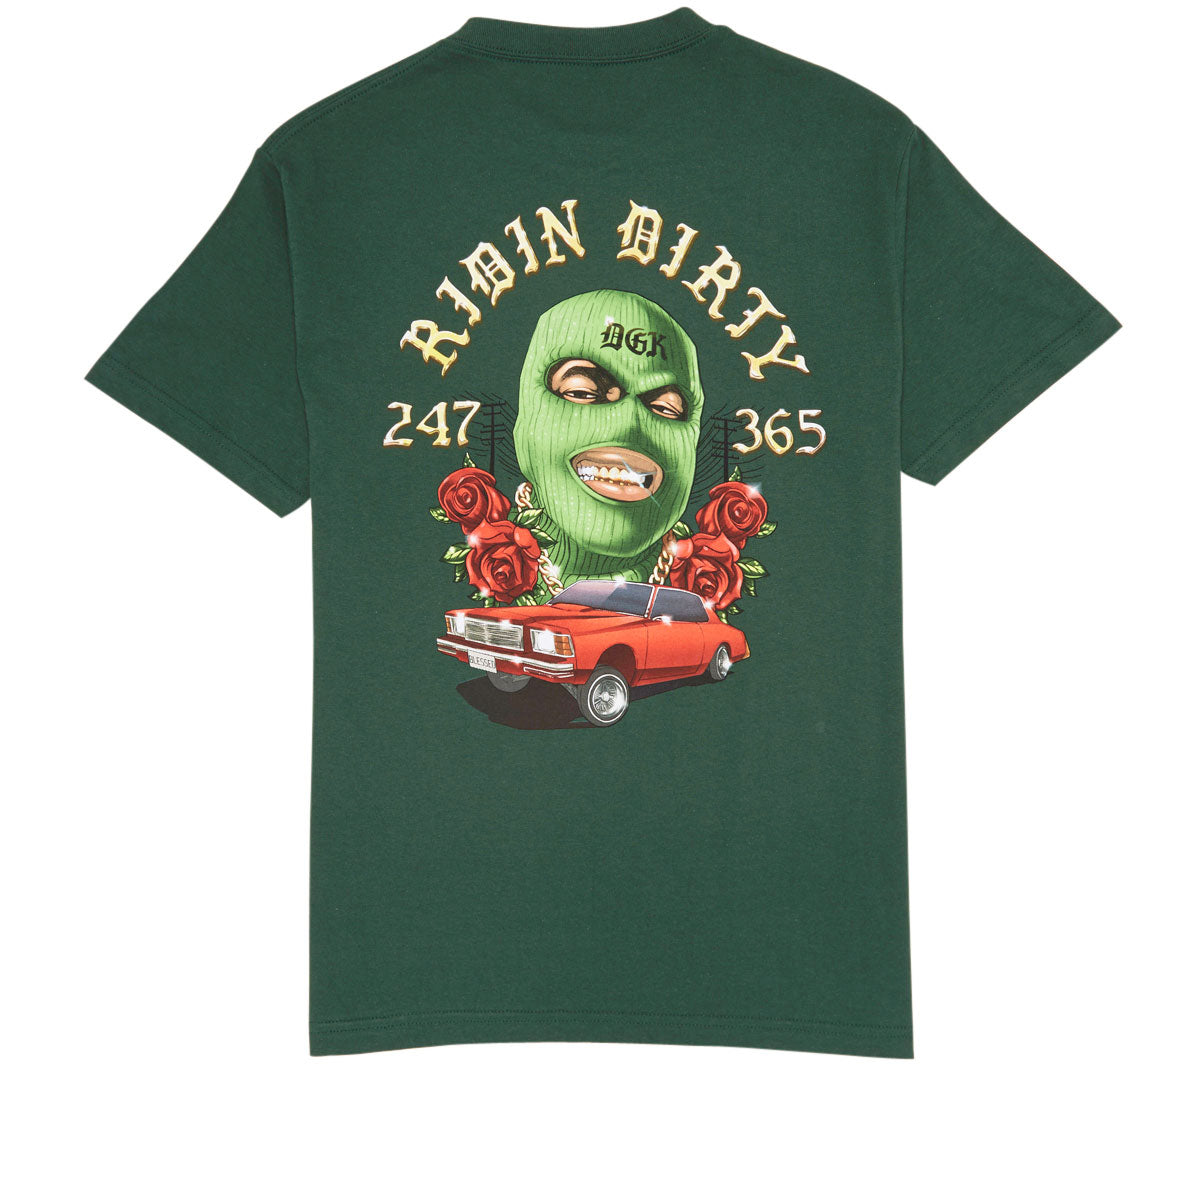 DGK Ridin' Dirty T-Shirt - Forest Green image 1